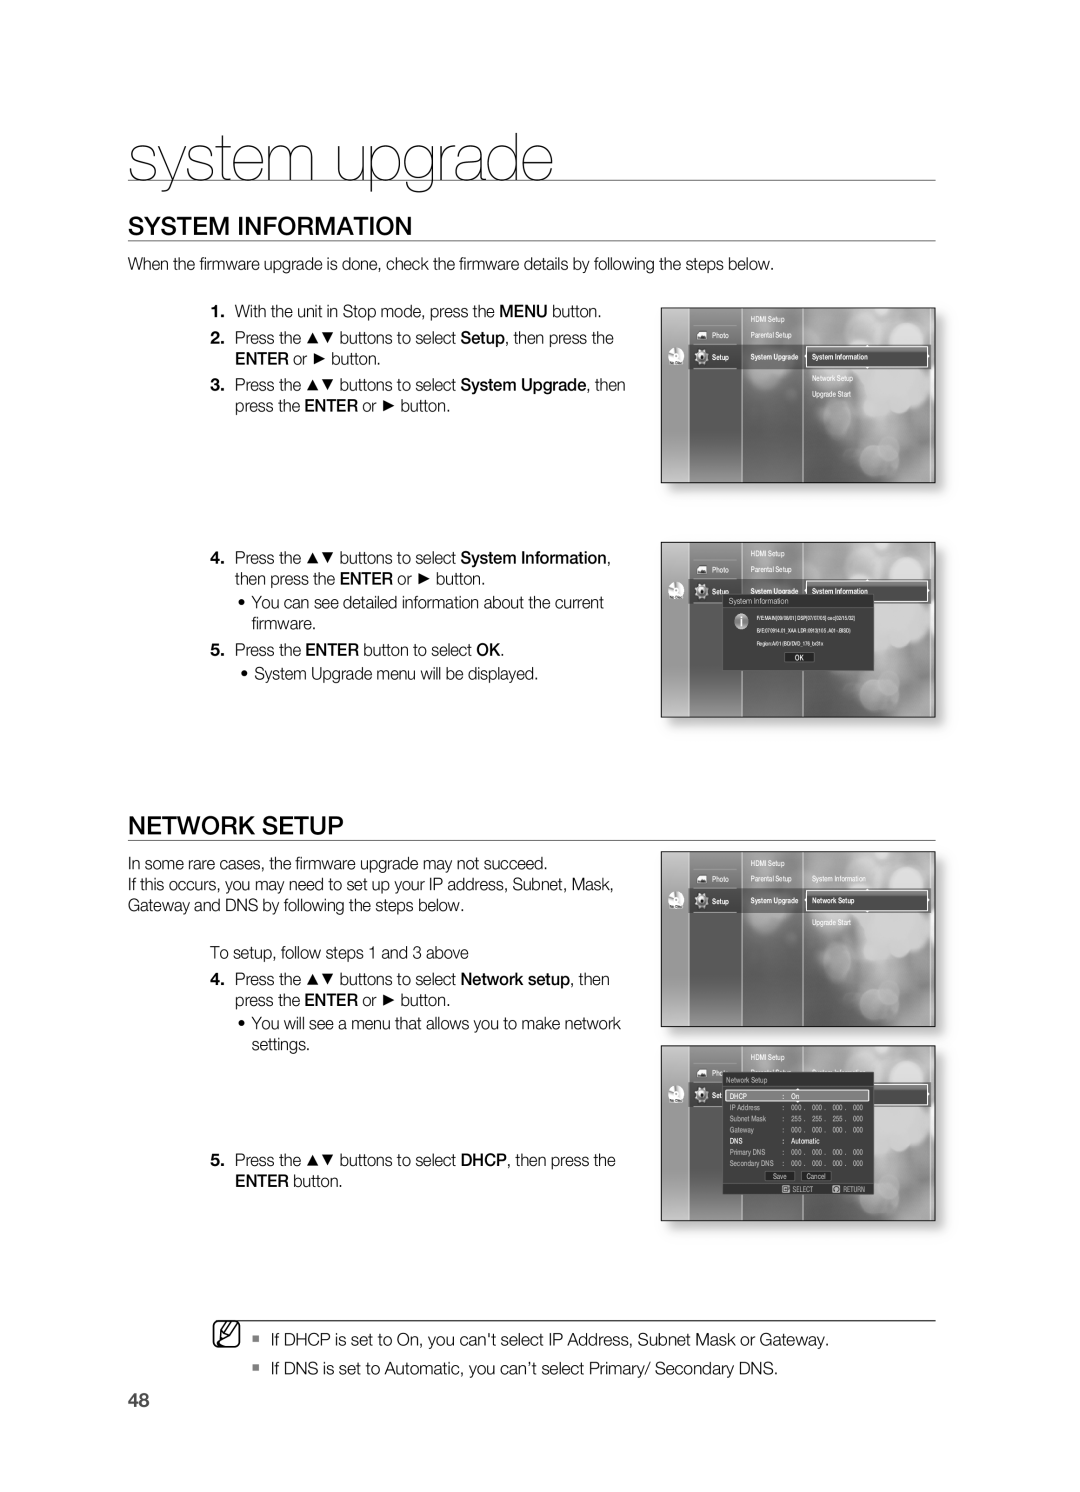 Samsung HT-BD2 manual System Information, Network Setup, system upgrade, ENTER button 